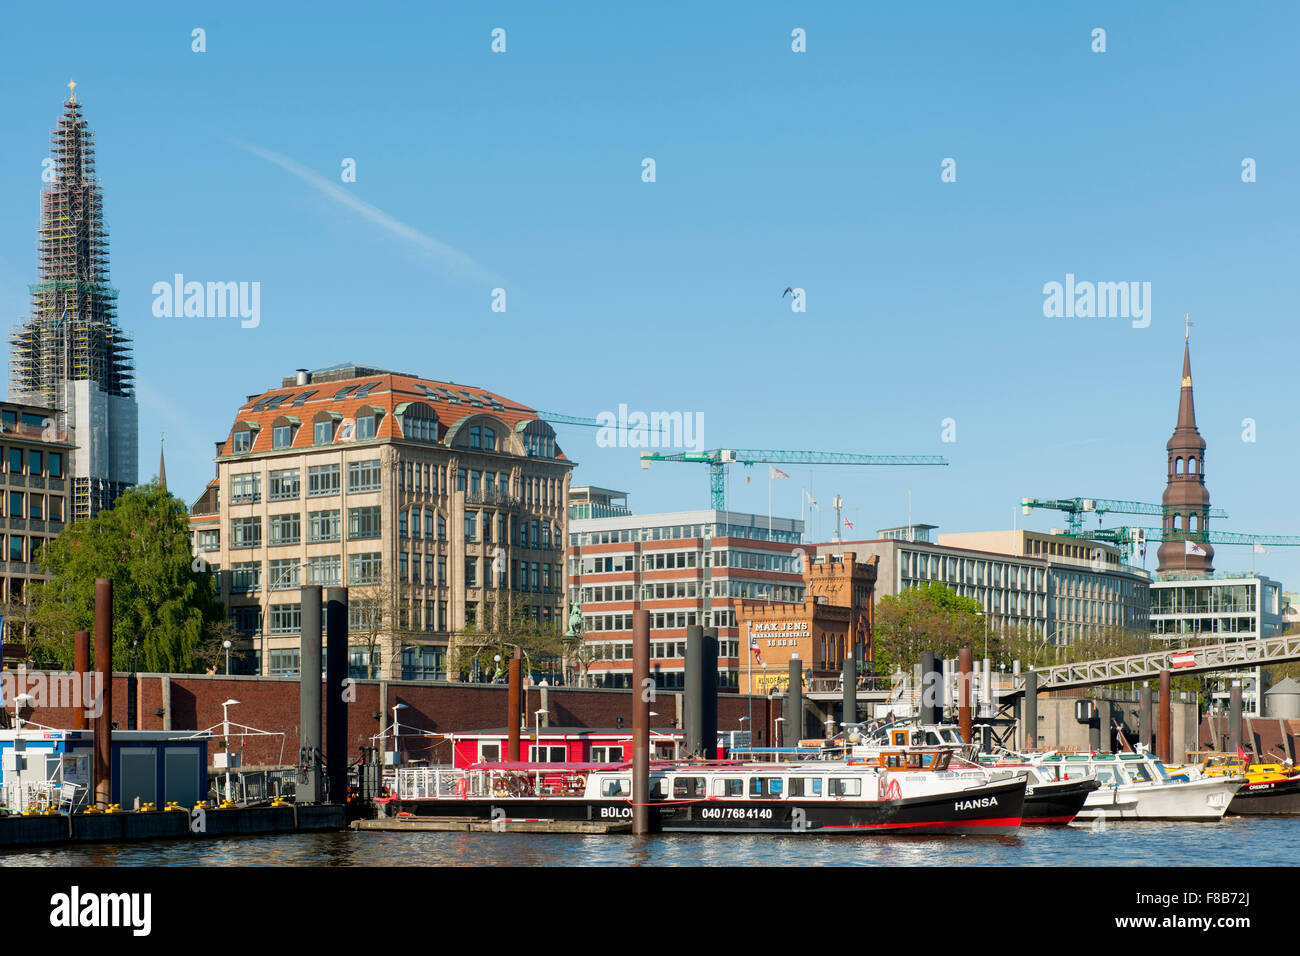 Deutschland, Hamburgo, Hafenrundfahrtboote Zollkanal Foto de stock